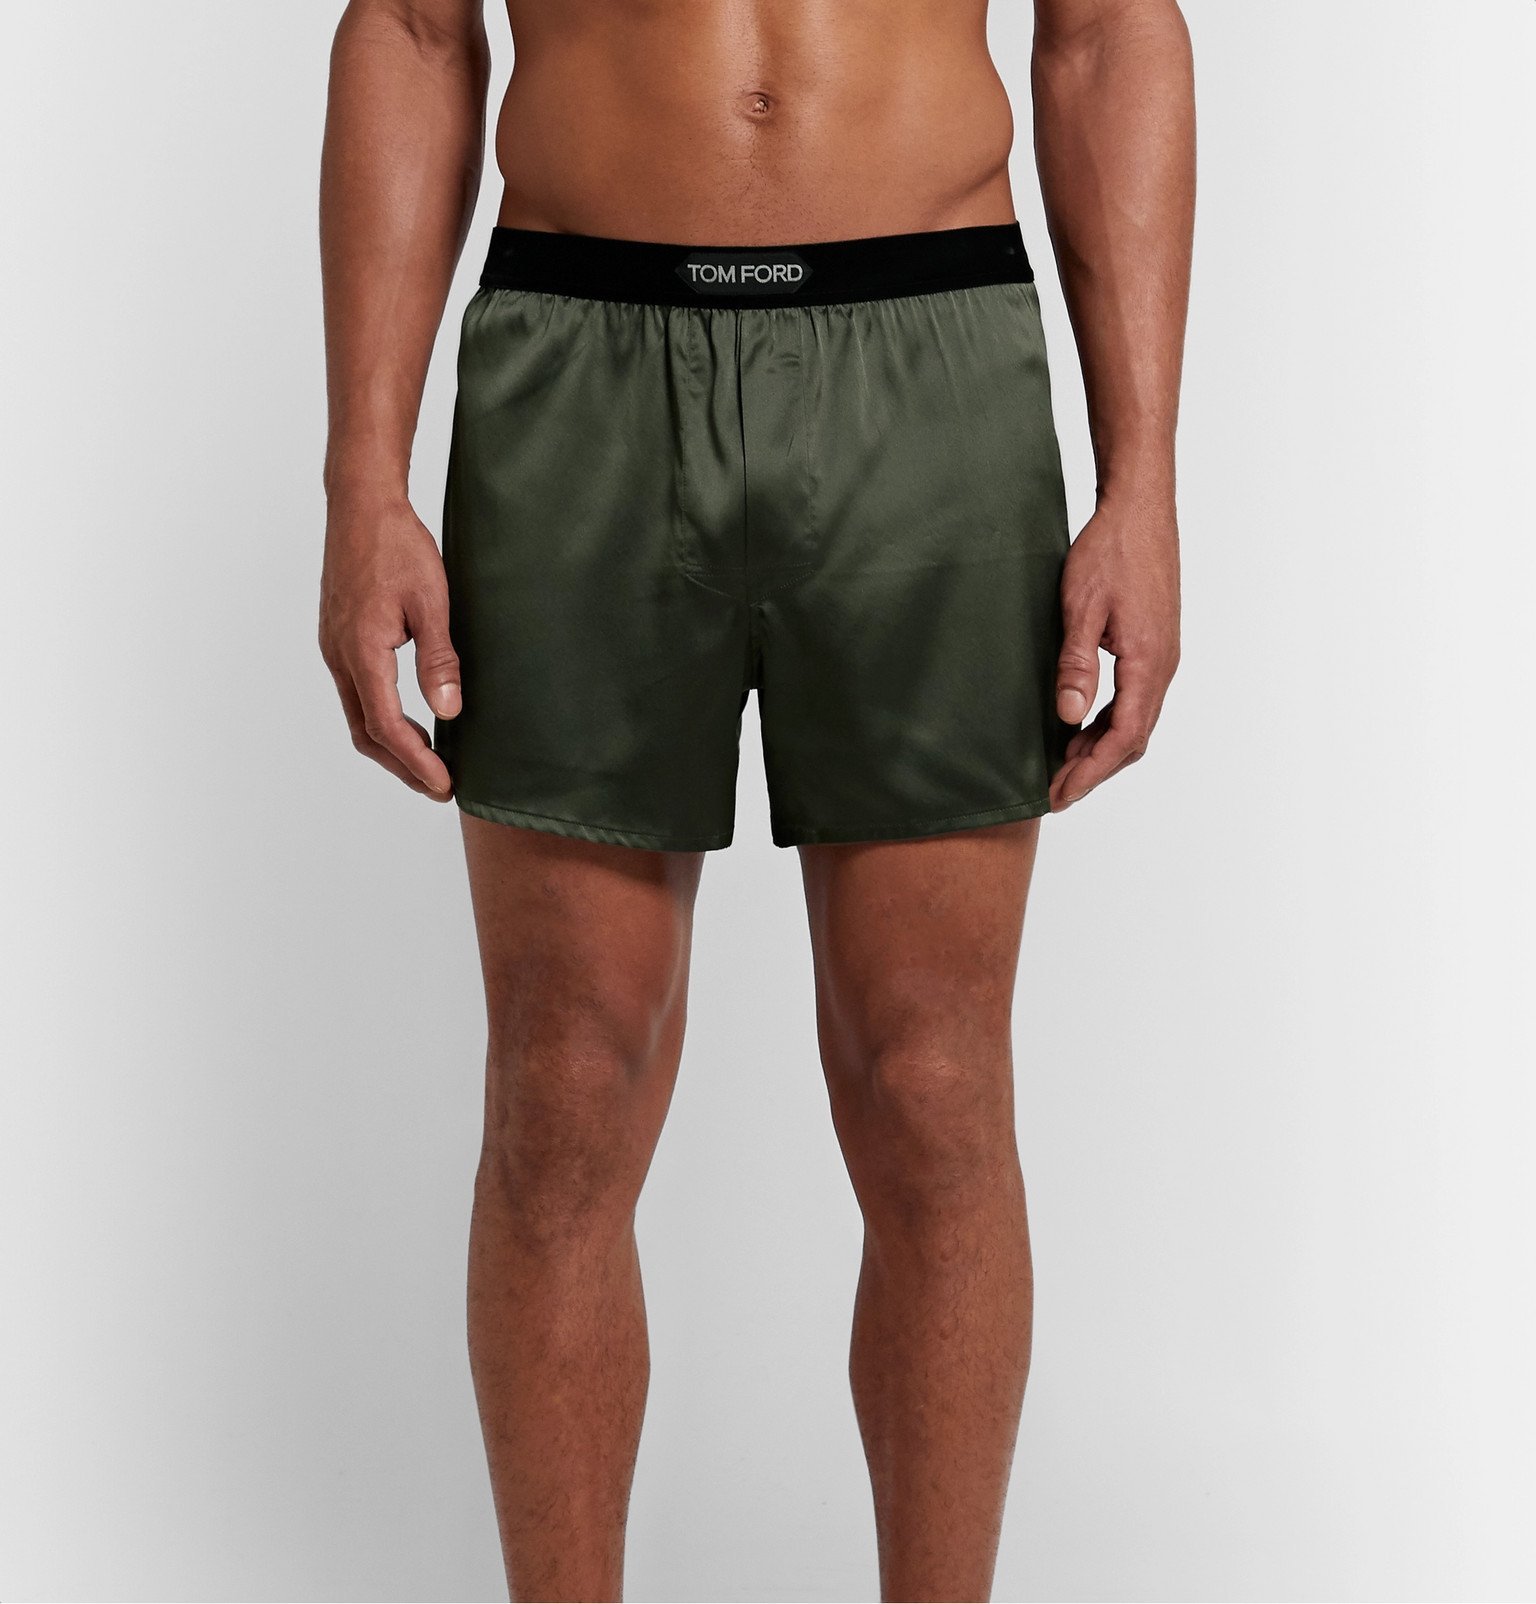 Tom ford silk satin shorts, 58% apagado autorización 